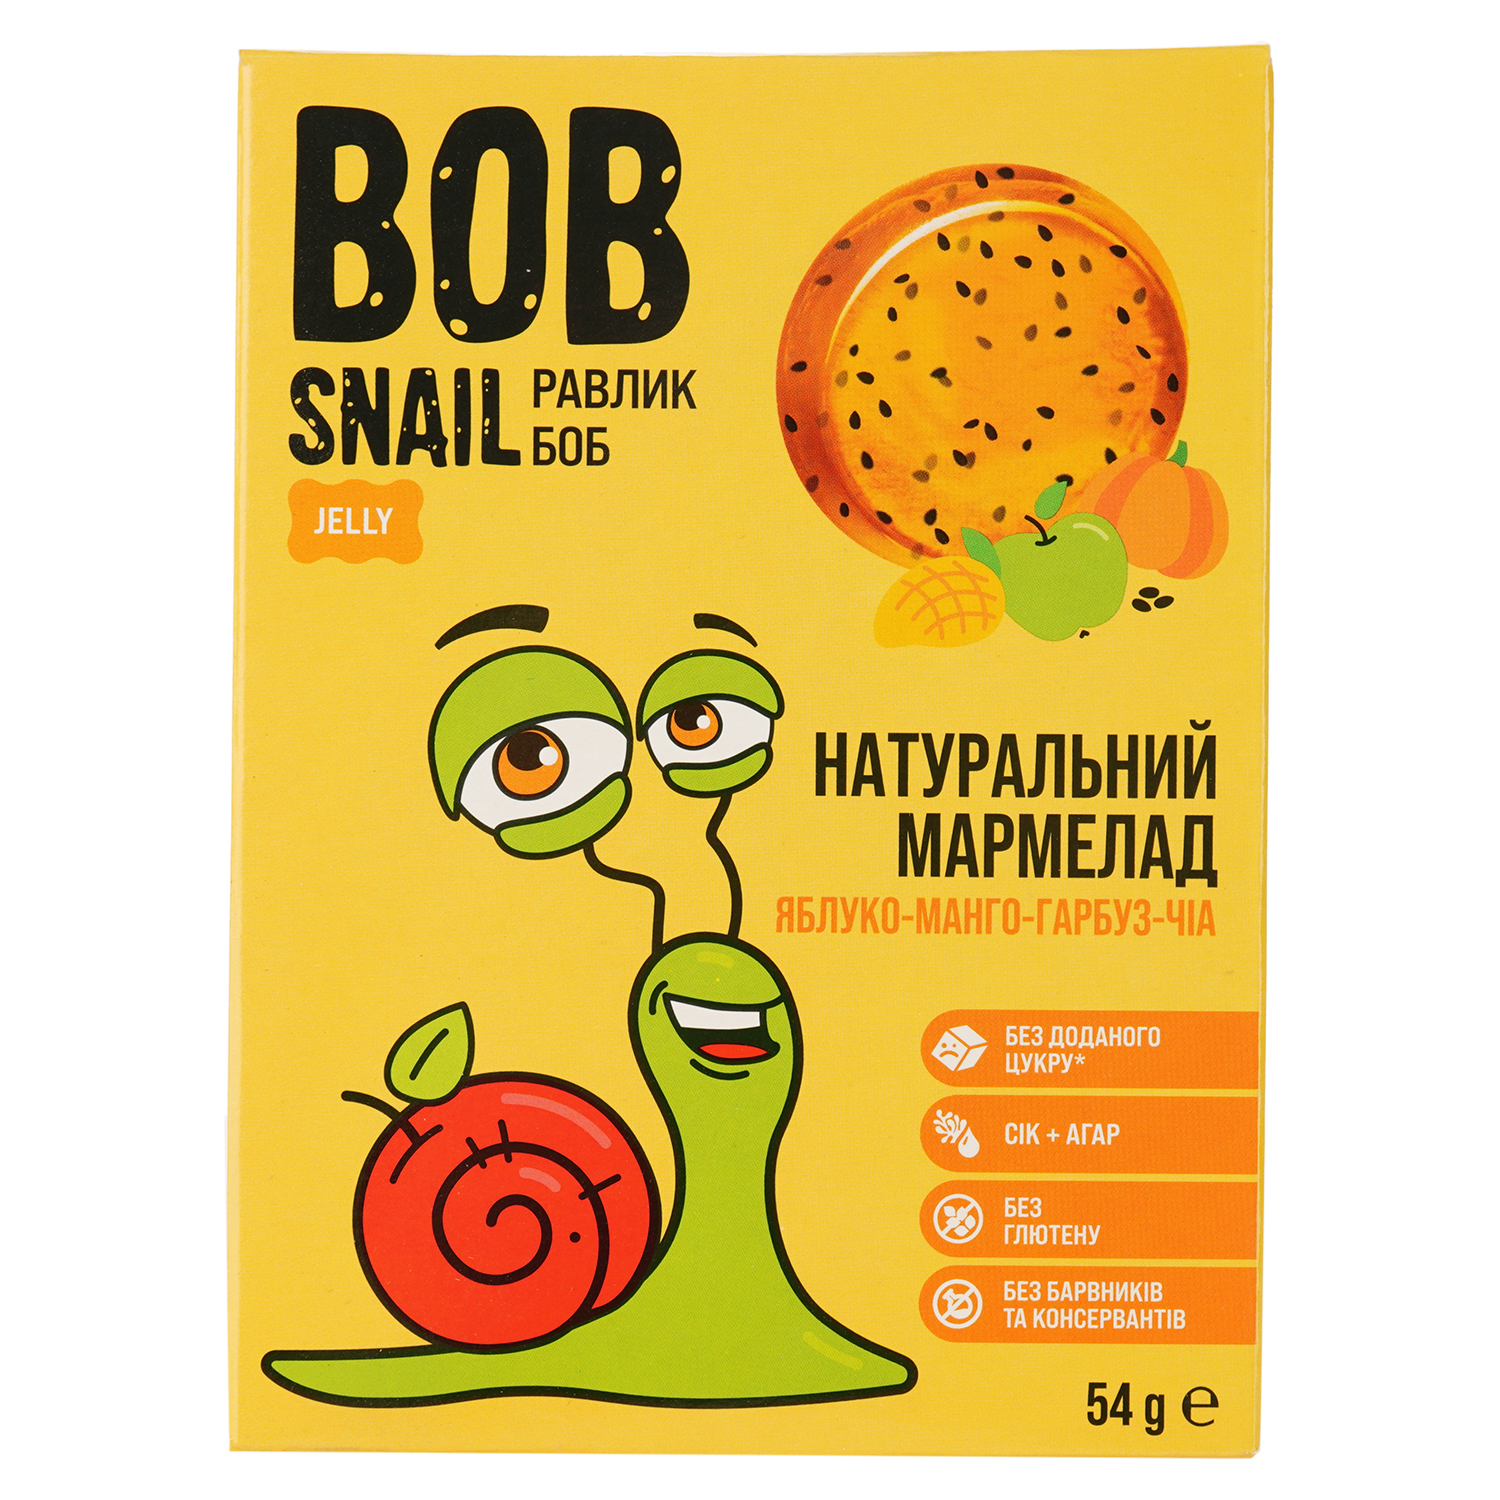 Фруктово-овощной мармелад Bob Snail Яблоко-Манго-Тыква-Чиа 54 г - фото 1